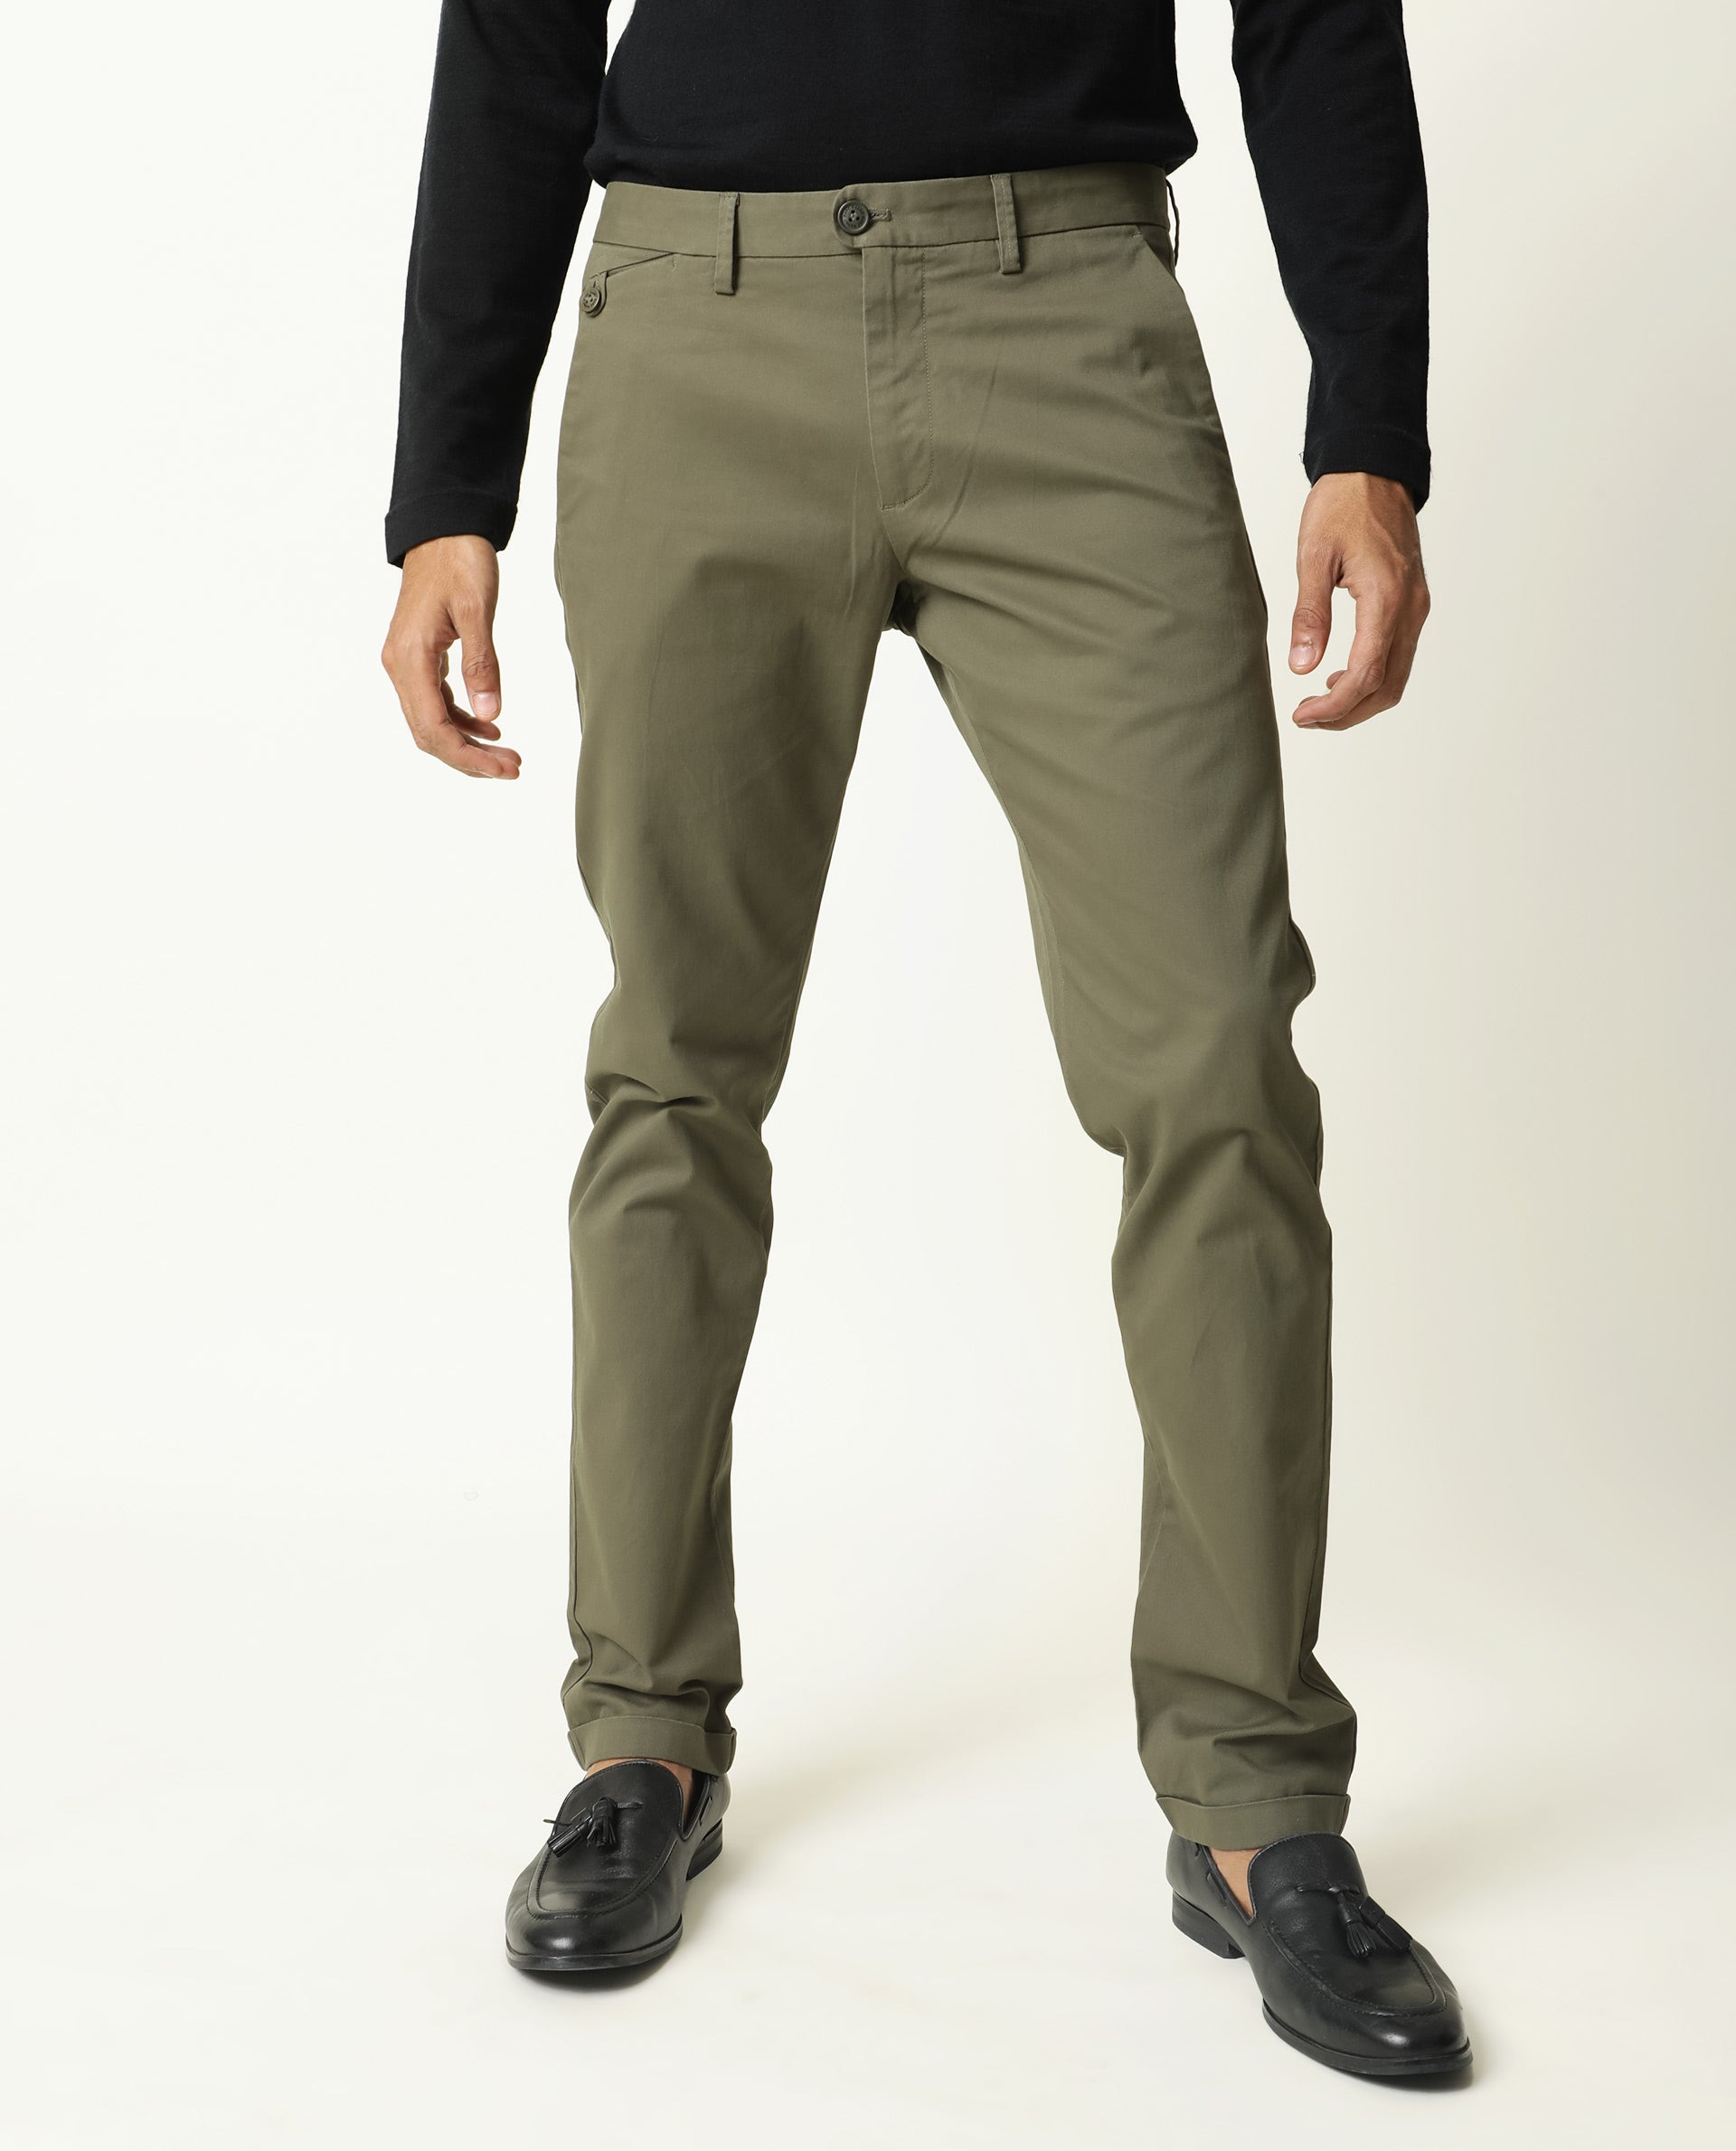 Update more than 77 men's pants fabric best - in.eteachers